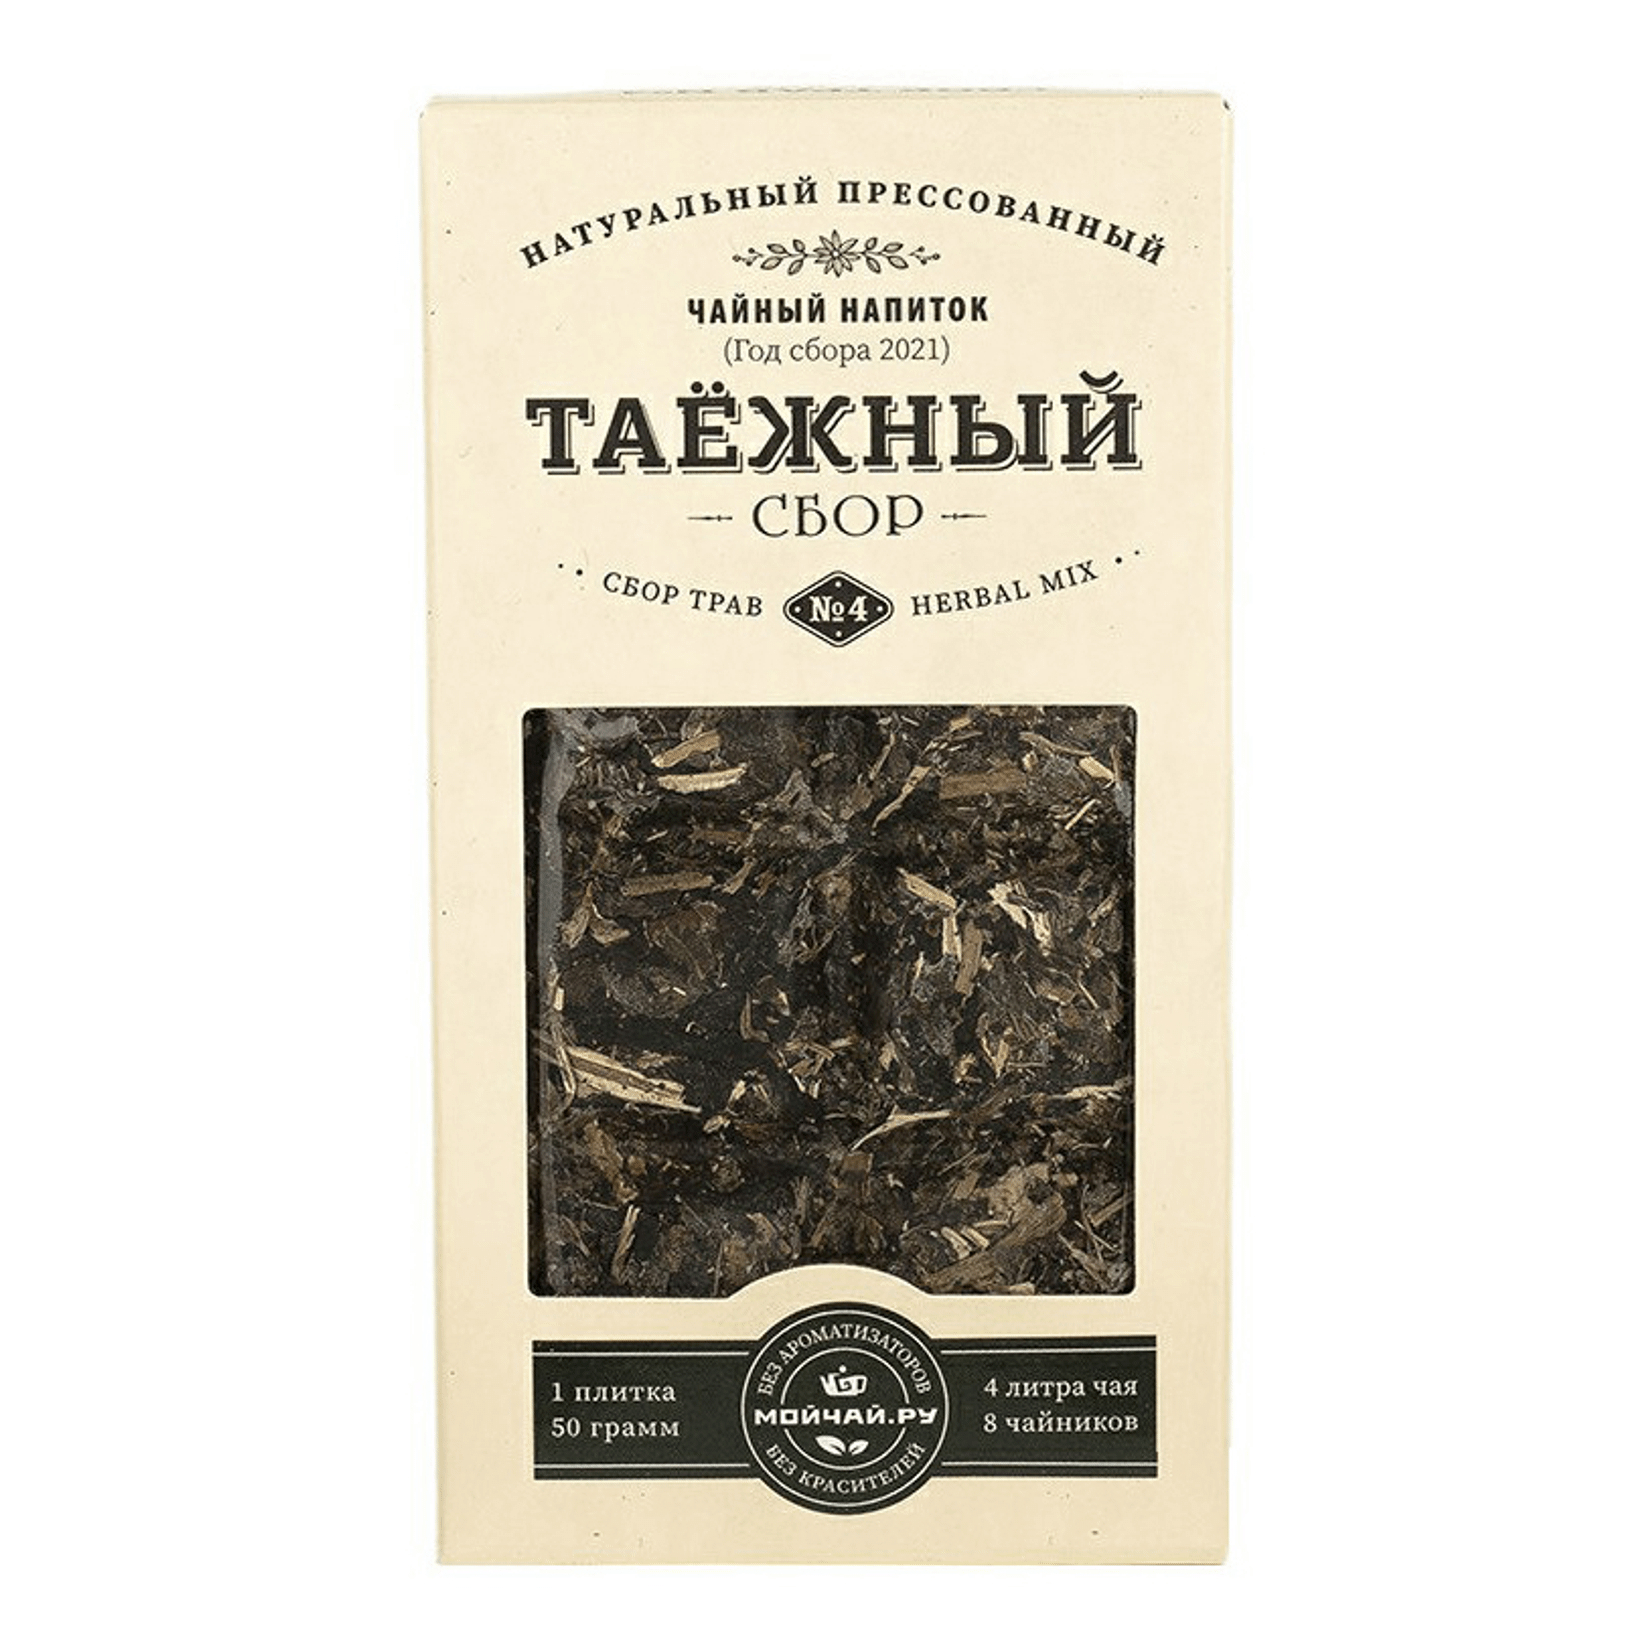 Сбор травяной Мойчай.ру Таежный 50 г чай чайные традиции крыма 4 спокойствие травяной 100 г